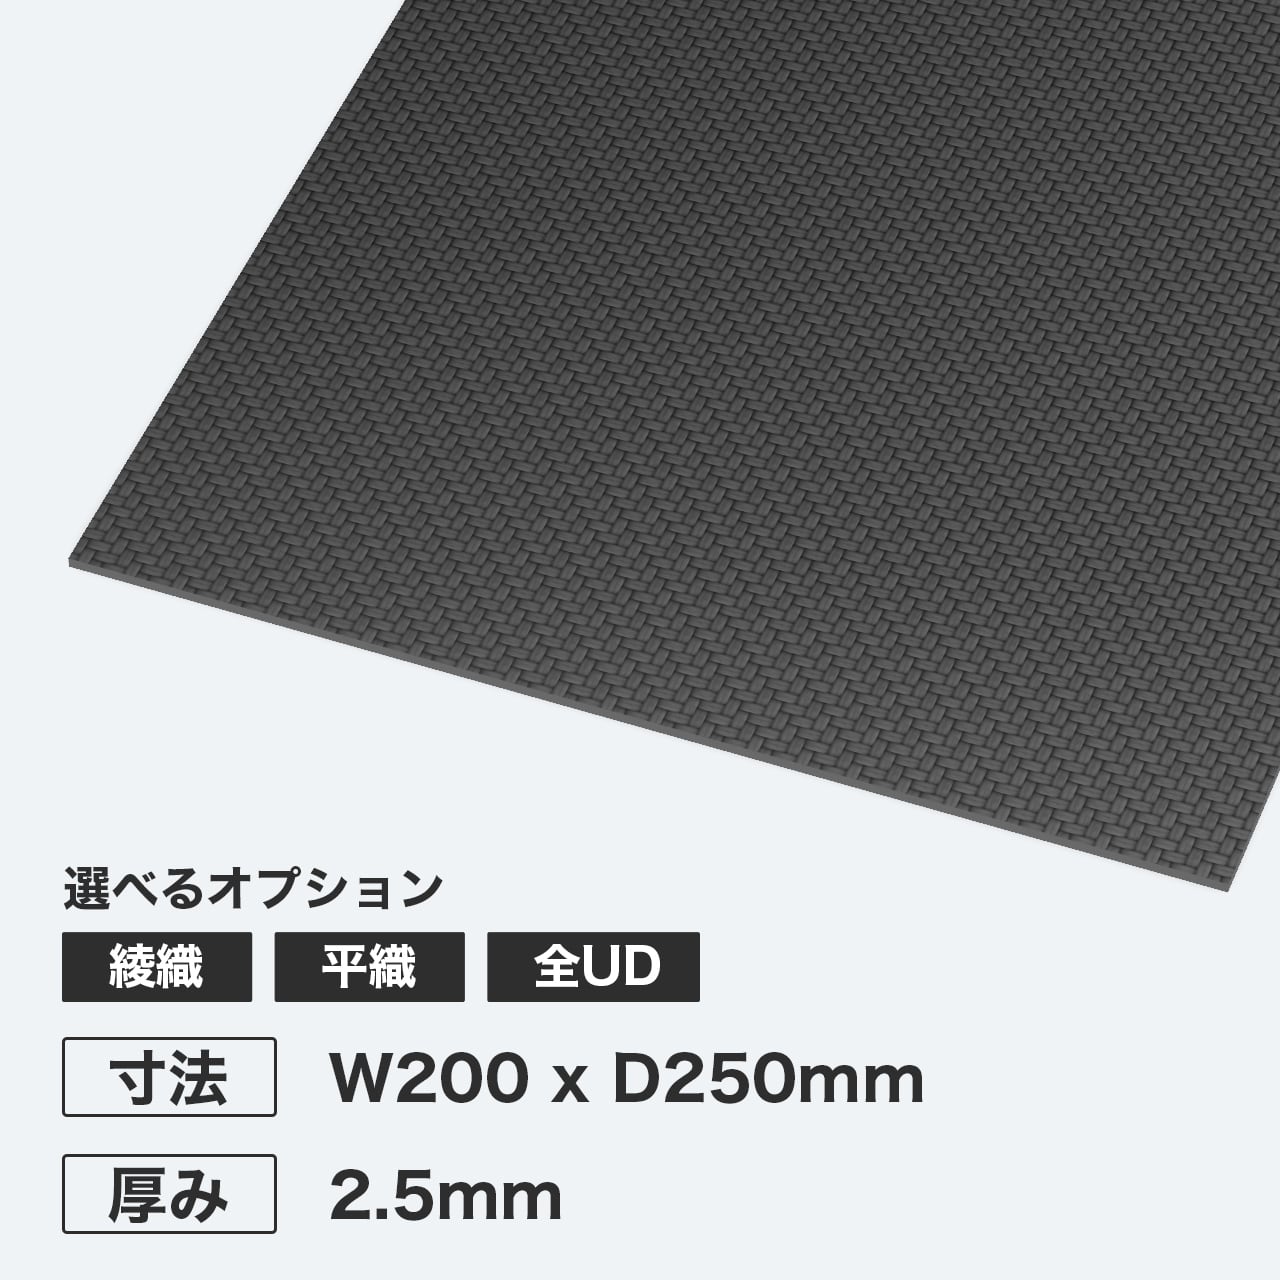 カーボン板 W200 x D250mm 厚み1.5mm | カーボンラボ既製品専門ショップ